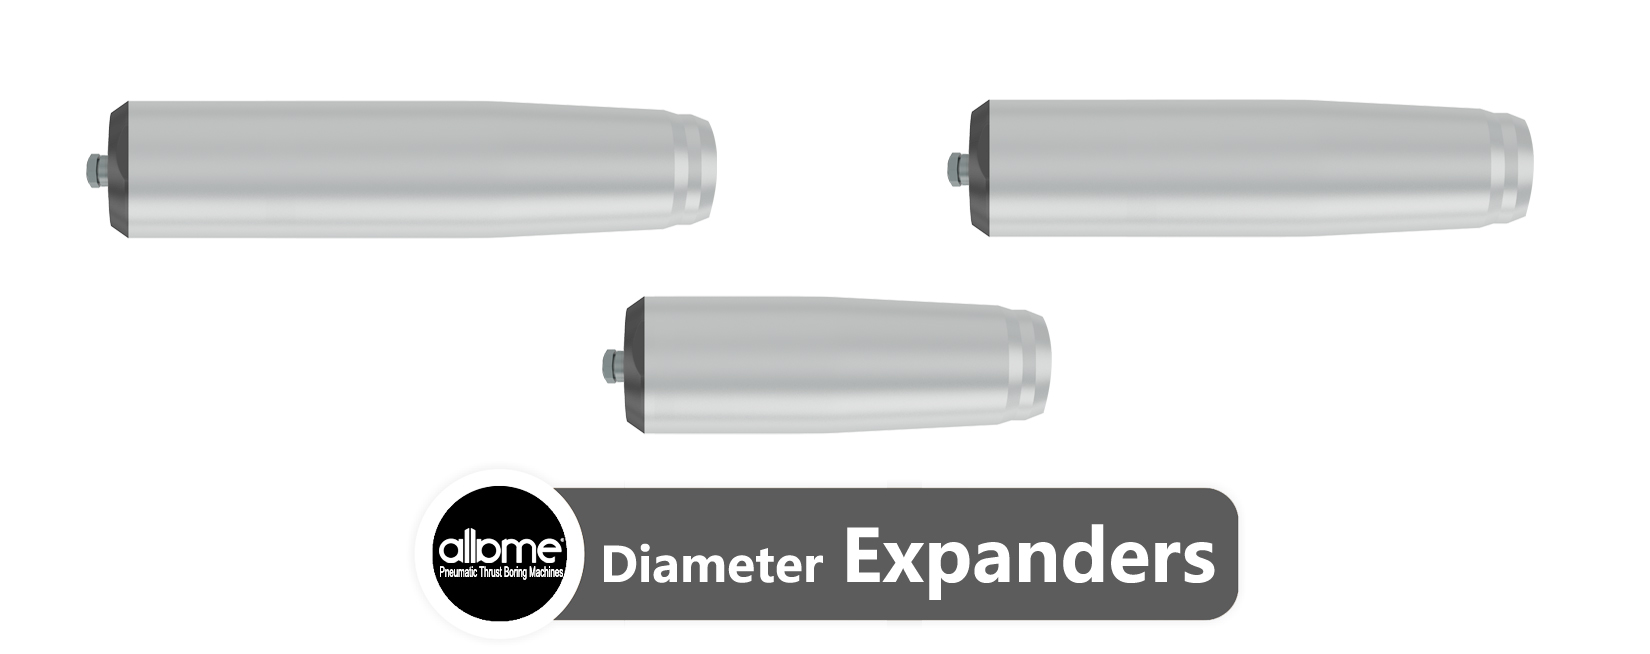 Diameter Expanders Expanders